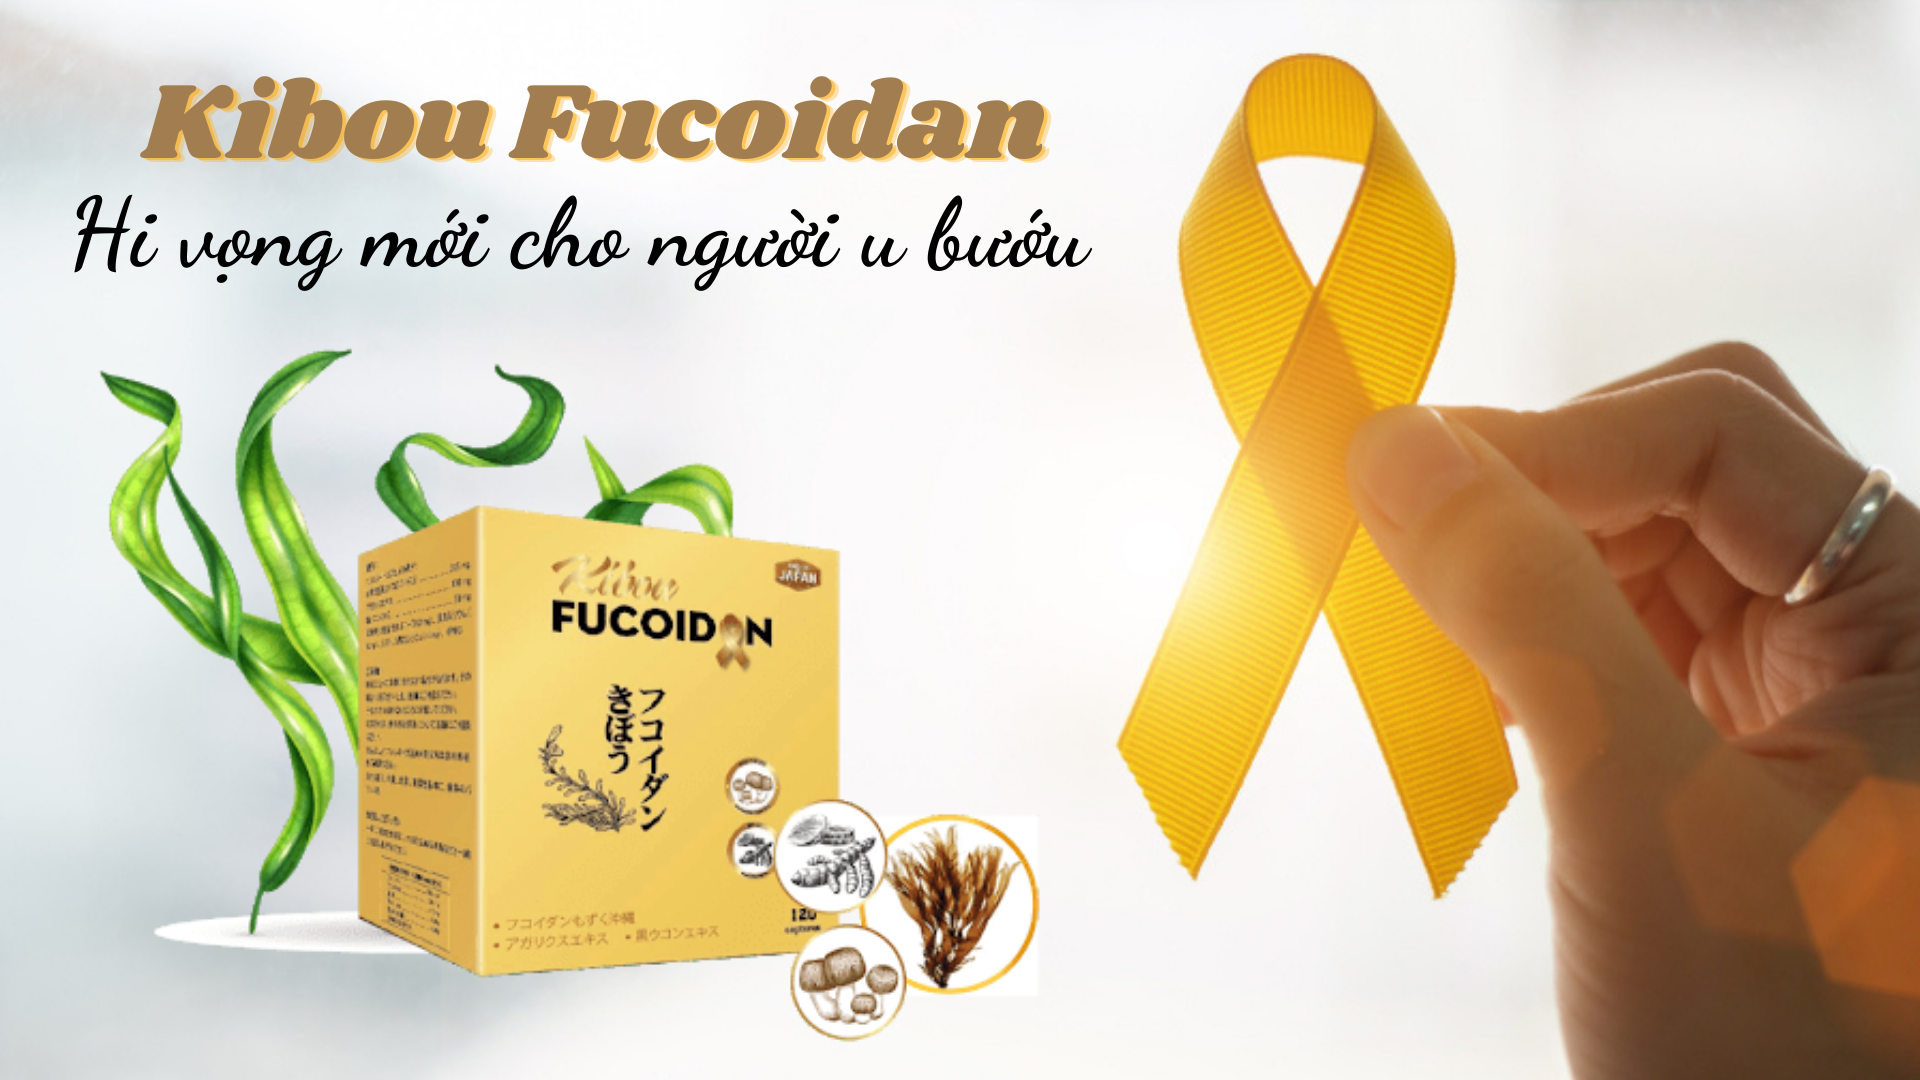 Kibou Fucoidan - Fucoidan vàng chuyên biệt trong hỗ trợ điều trị u bướu